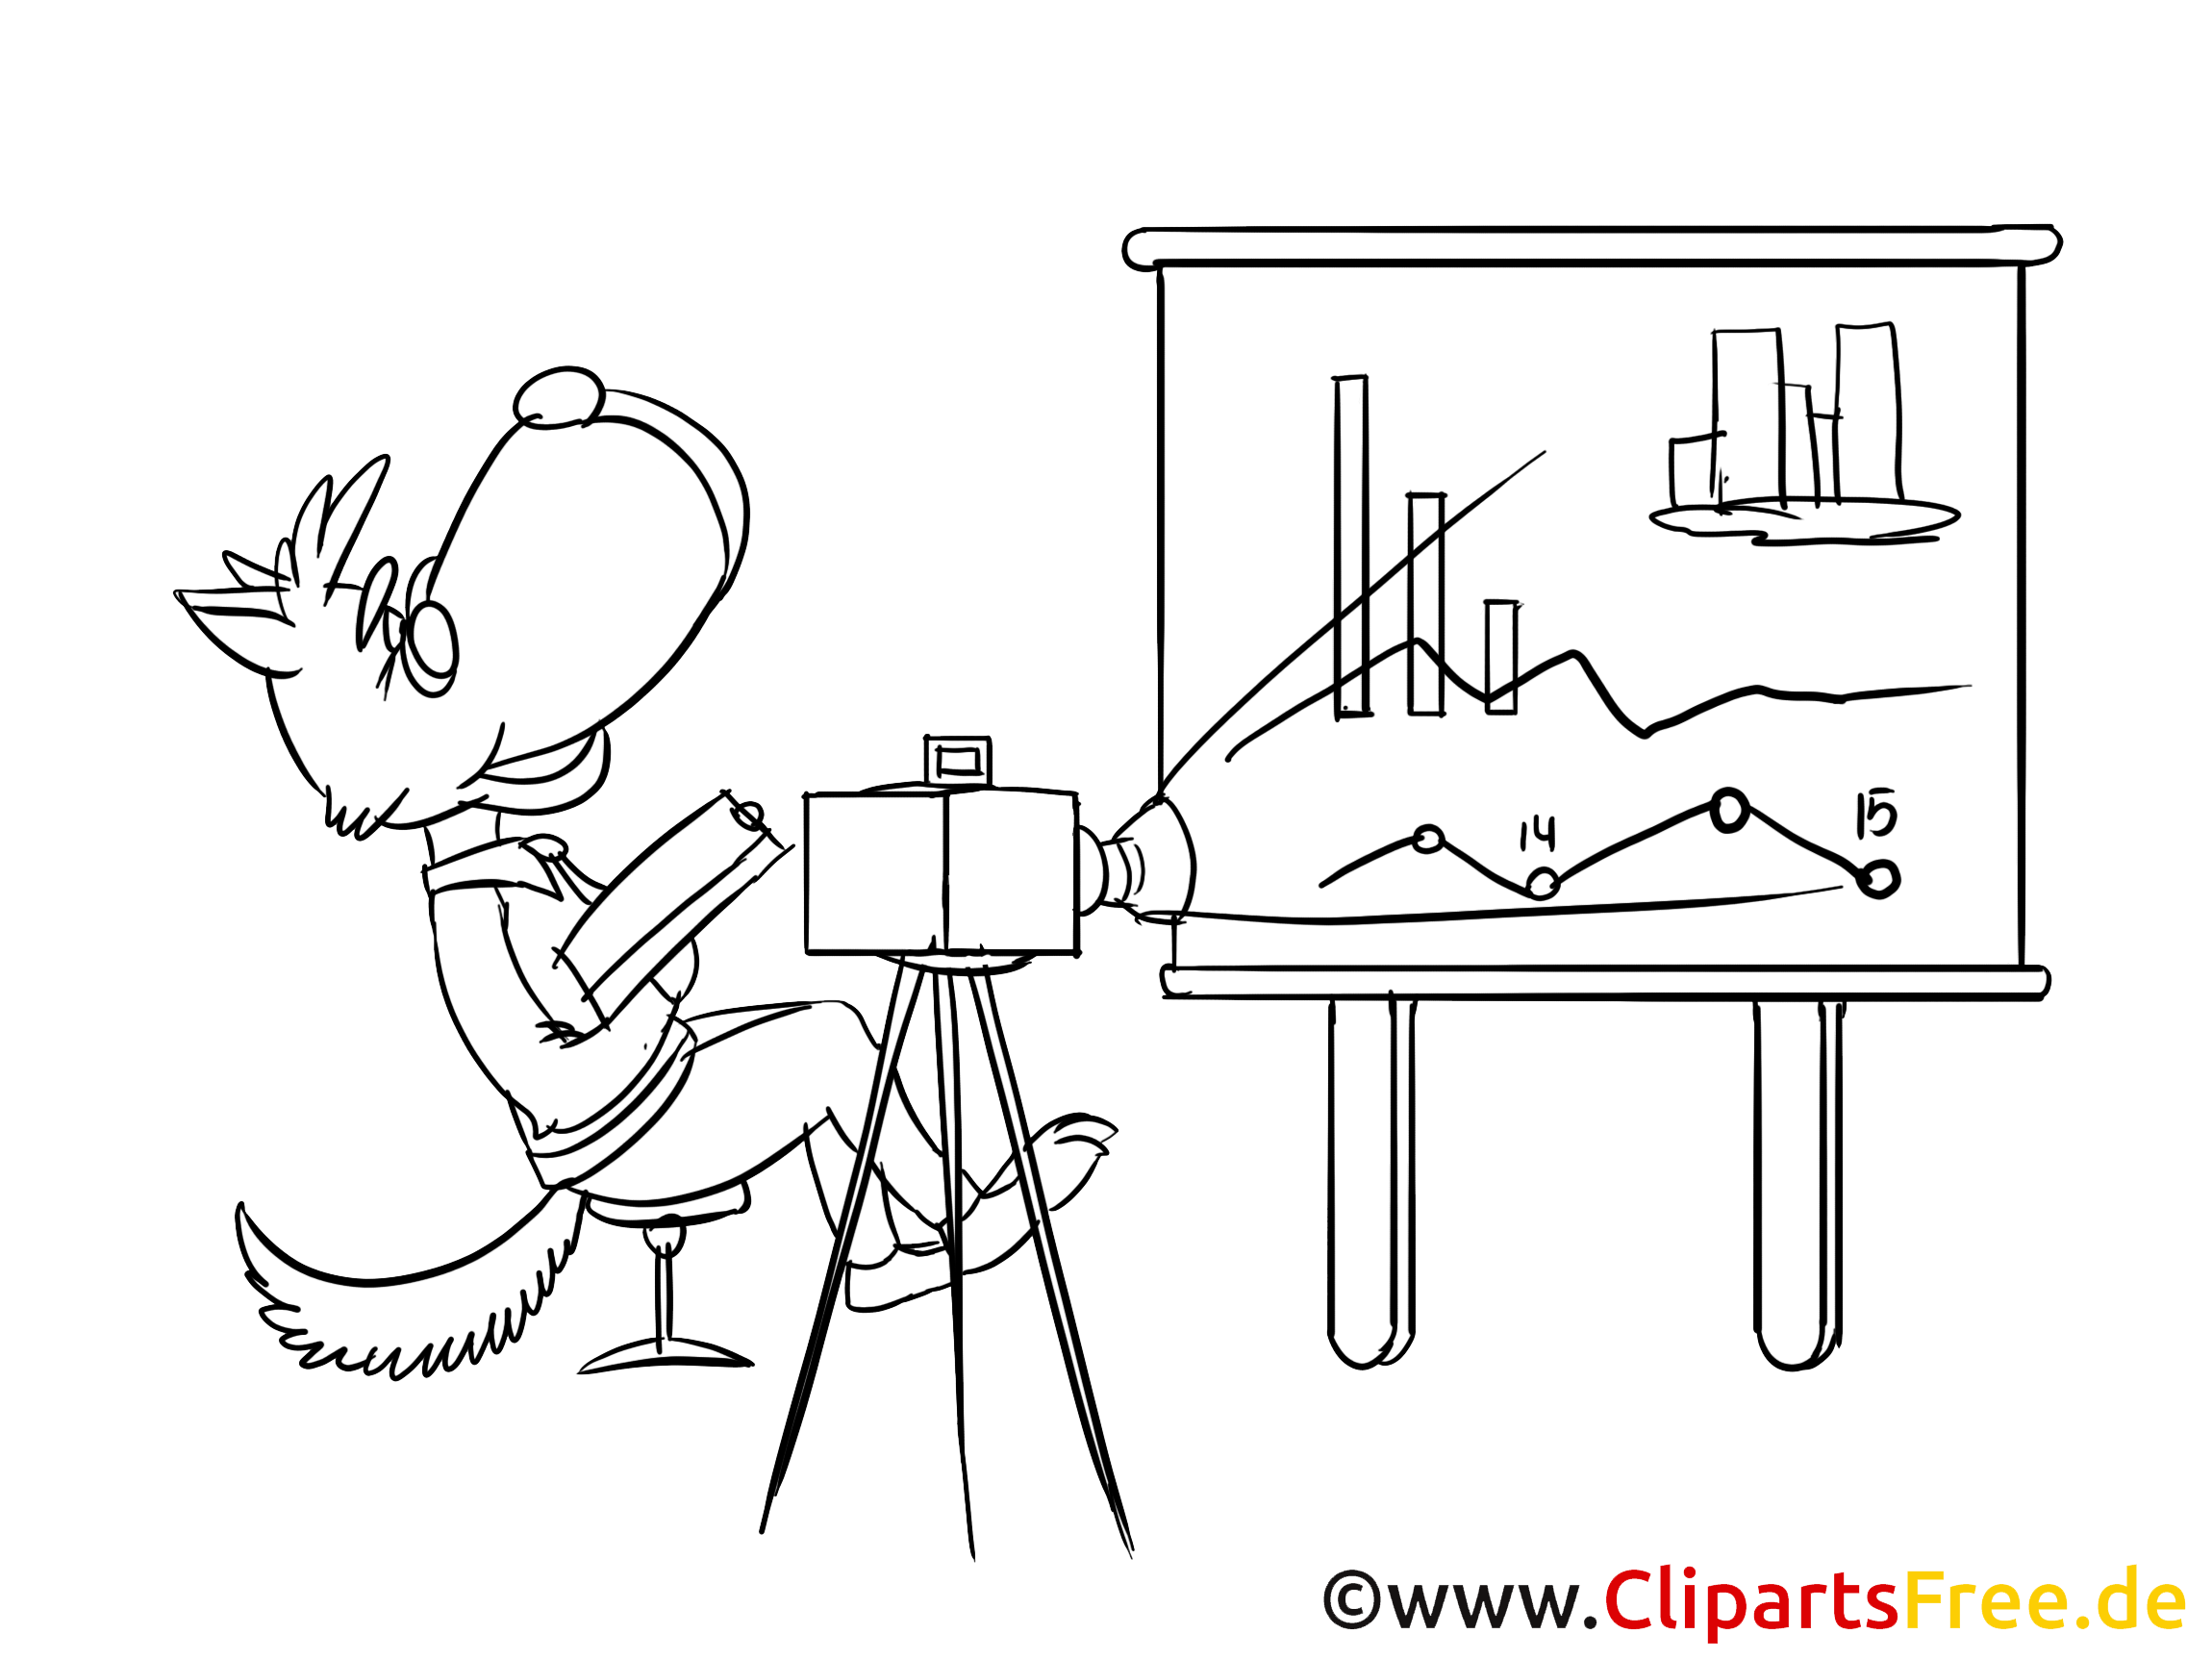 Bildtitel  Strategie Workshop Clipart Bild Zeichnung Cartoon